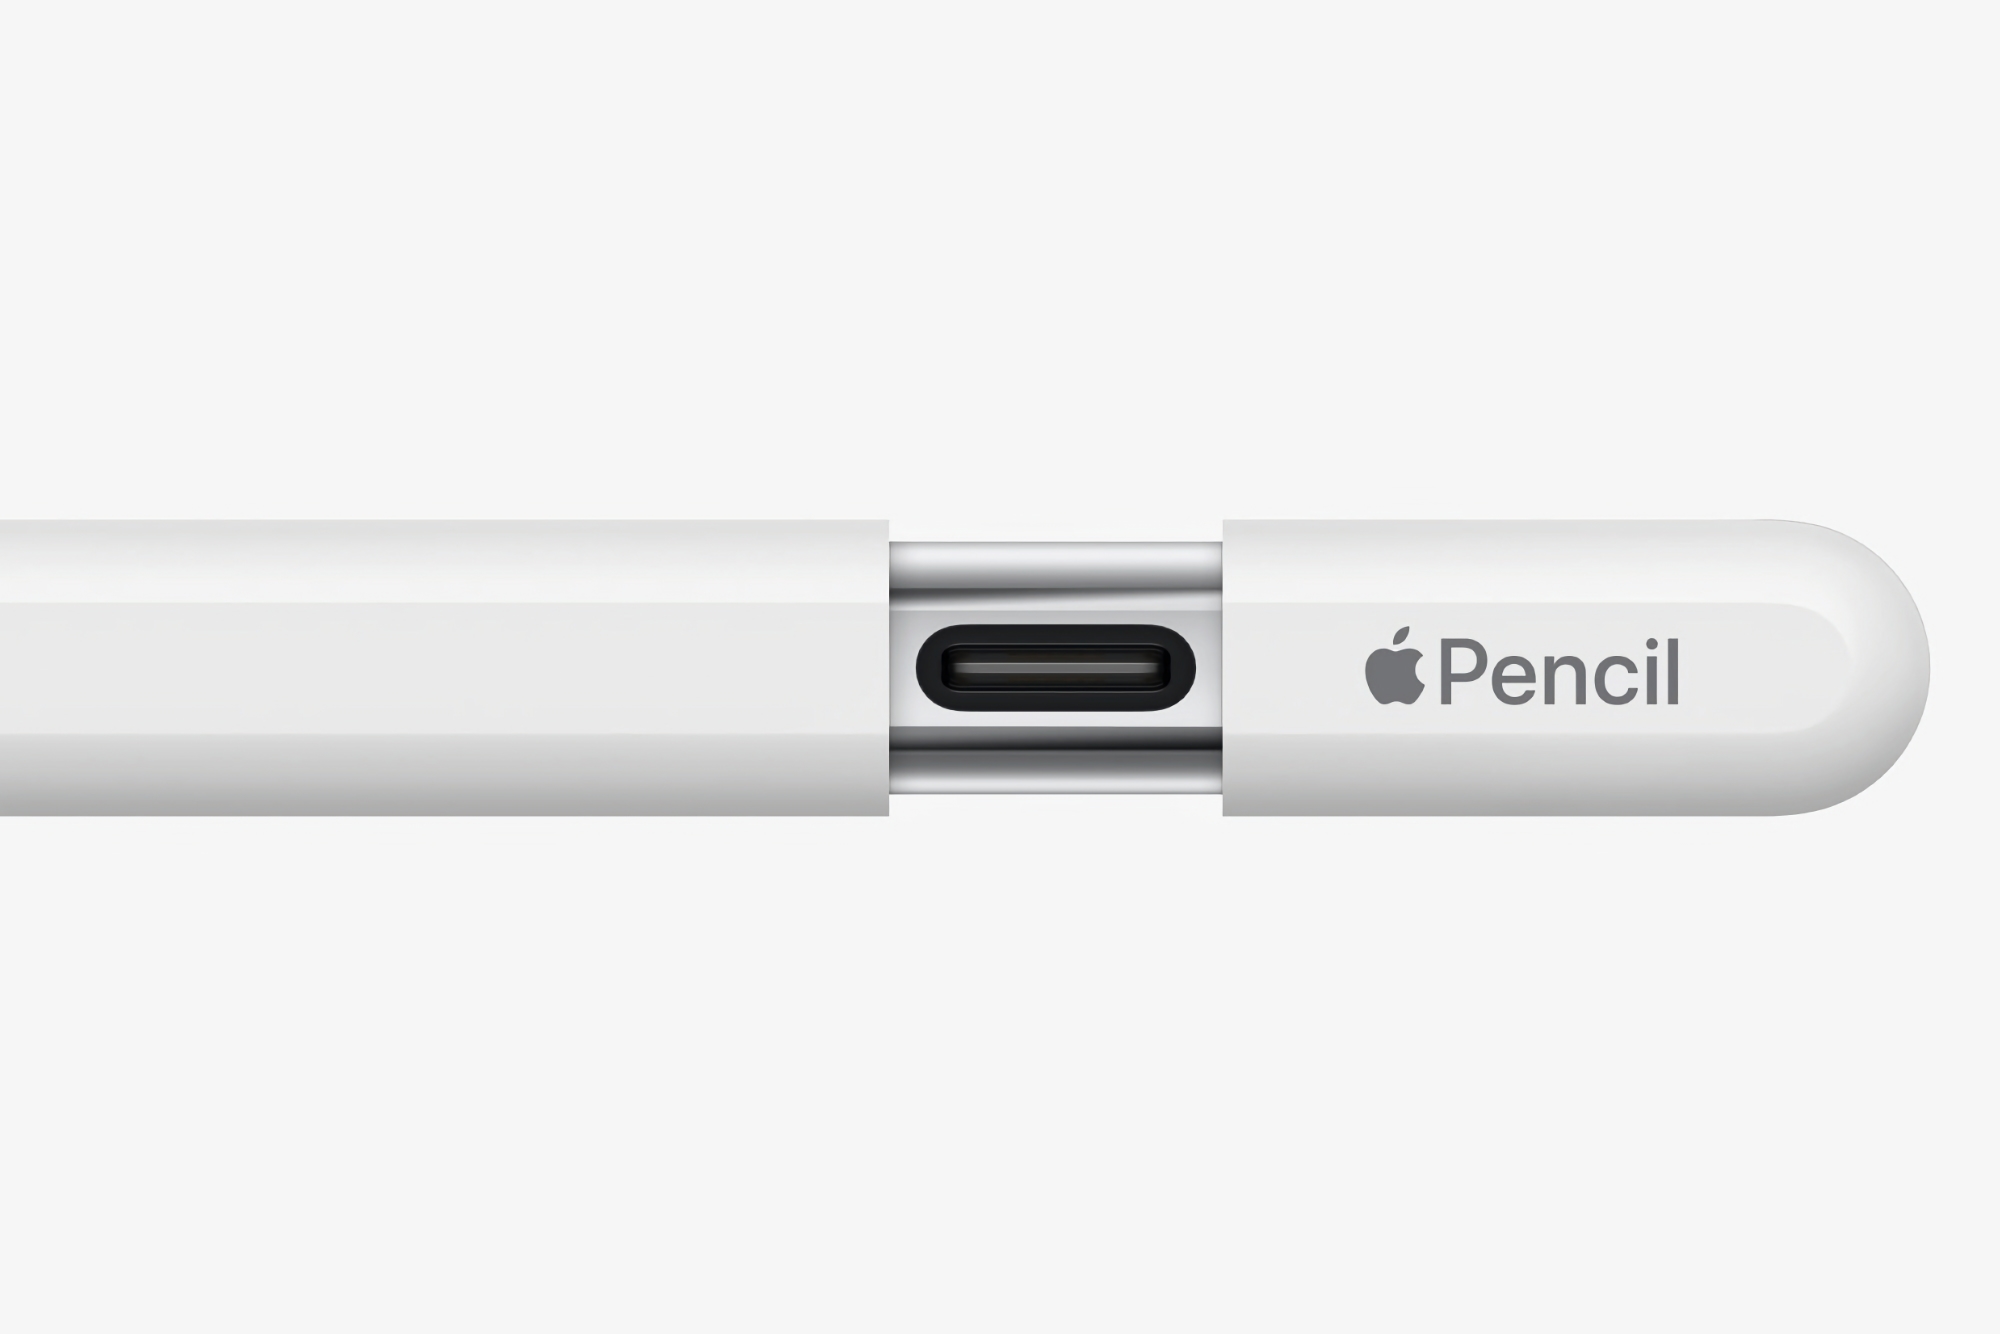 Apple heeft nieuwe firmware uitgebracht voor Apple Pencil met USB-C